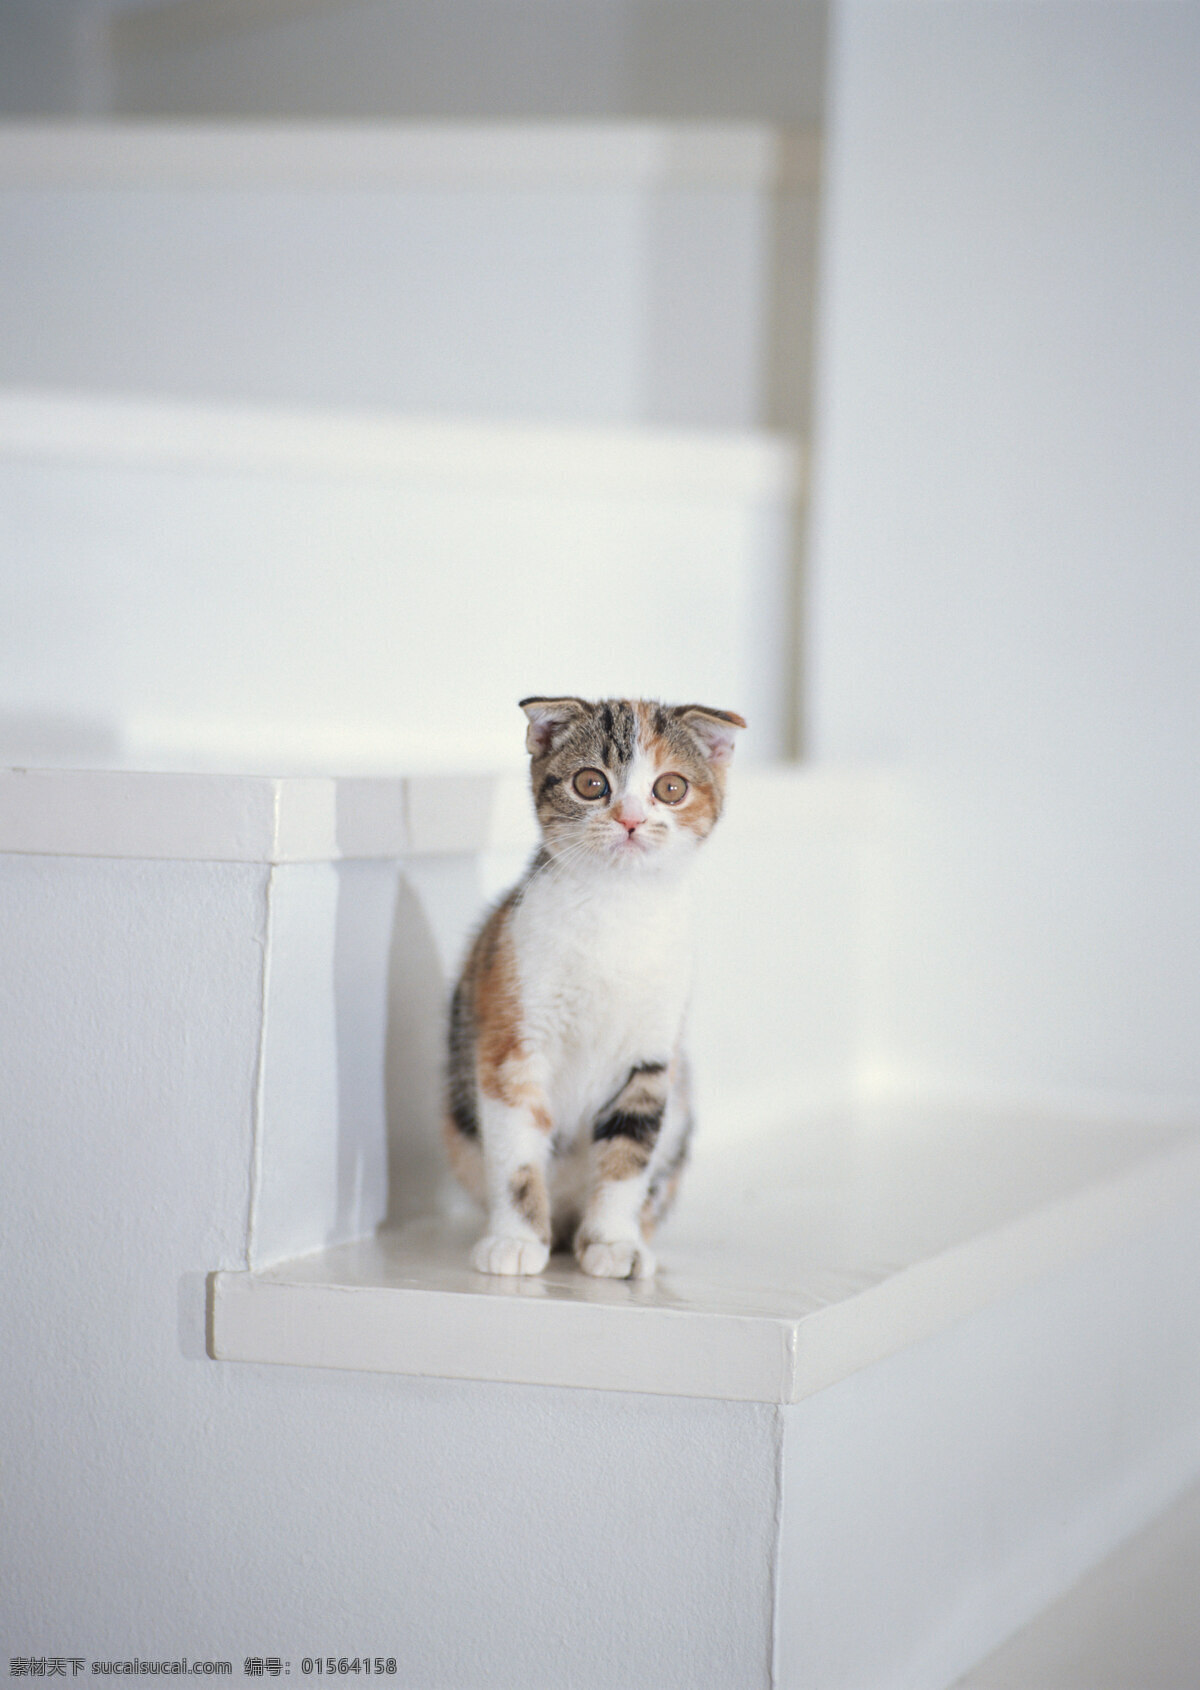 楼梯 上 小猫 动物摄影 宠物 猫 可爱的猫 家猫 猫咪 小猫图片 家禽家畜 生物世界 猫咪图片